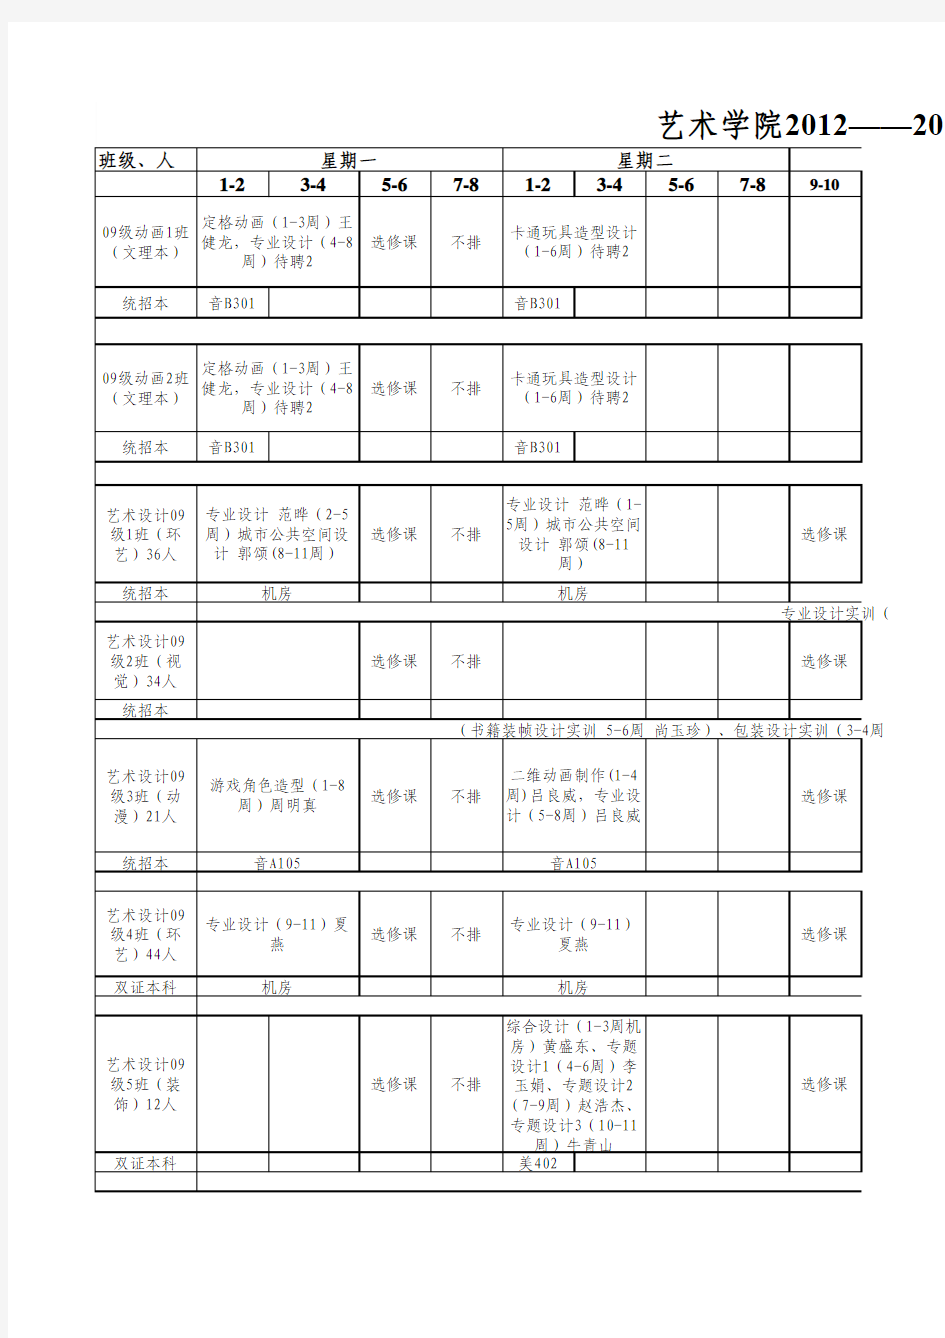 6.27 2012-2013-1艺术学院课表(老生)